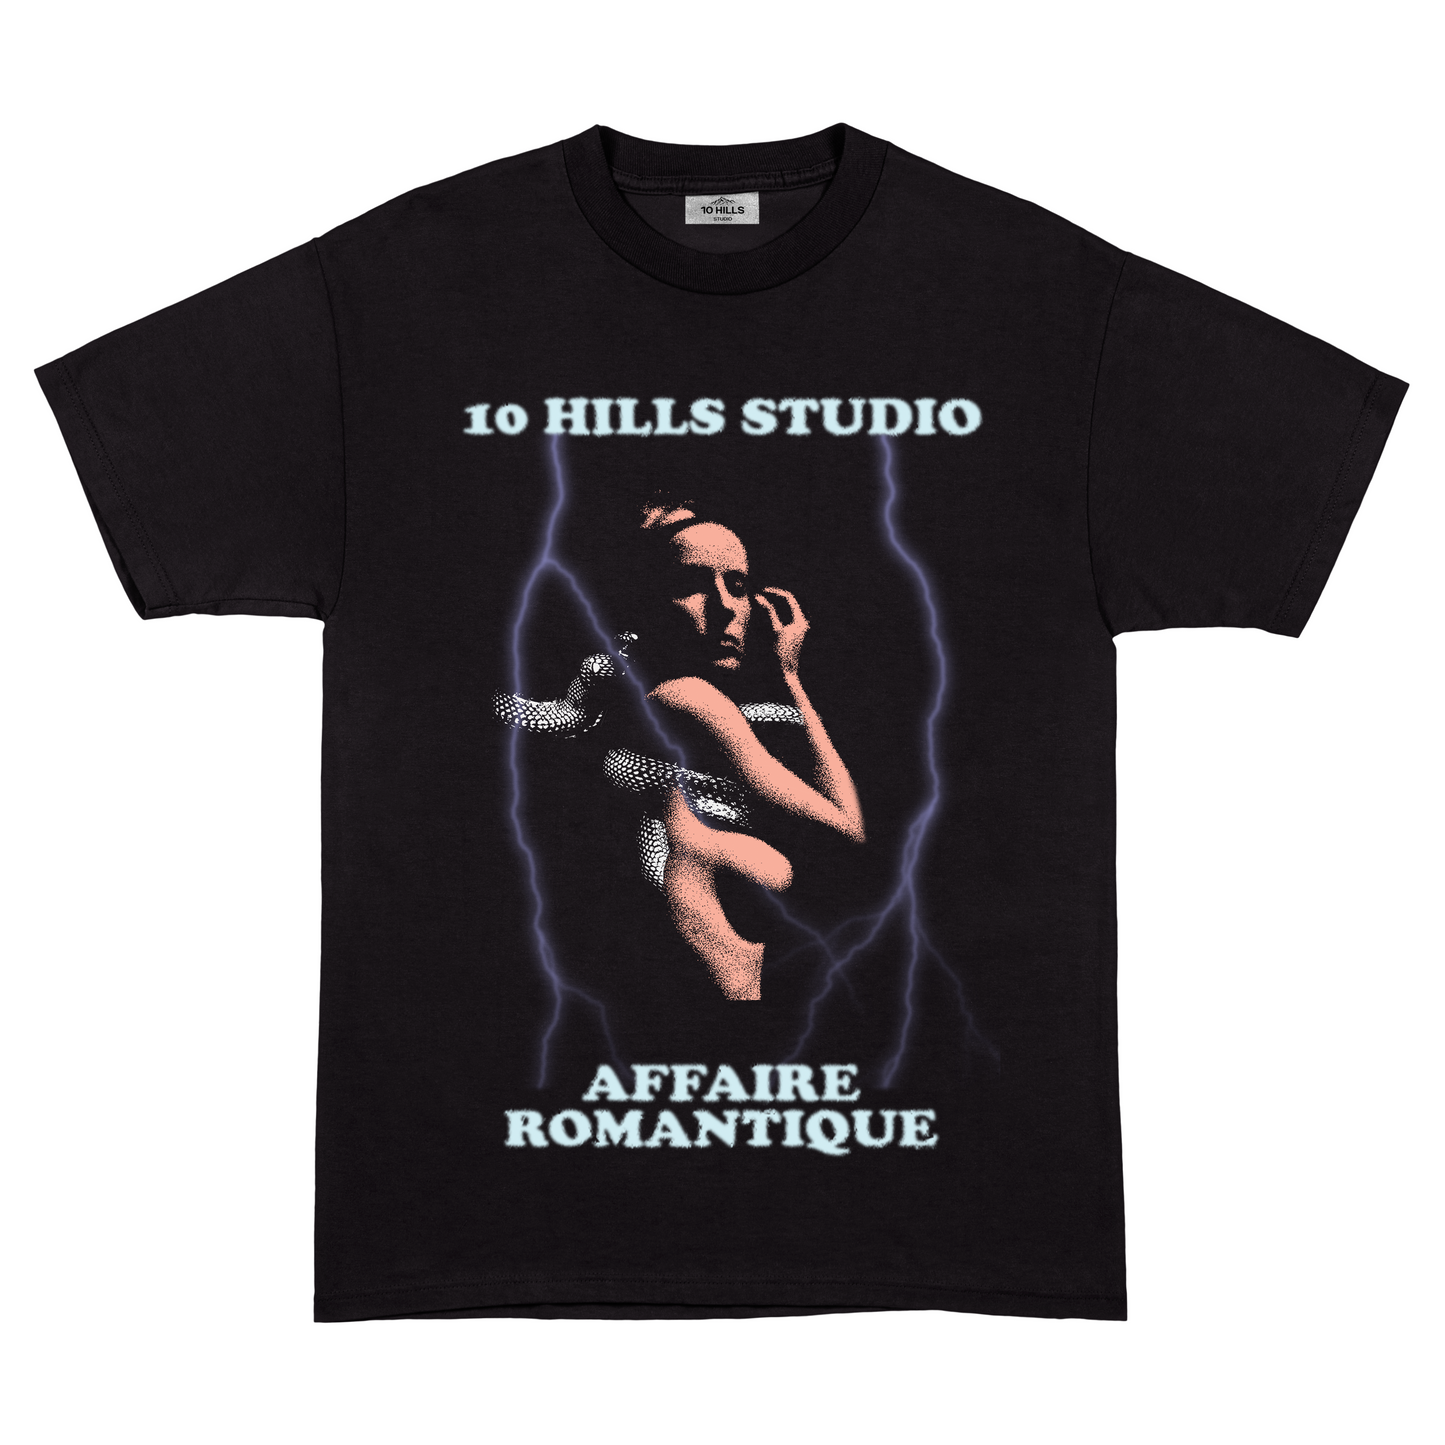 Front View of 10 Hills Studio 'Affaire Romantique' Black T-Shirt